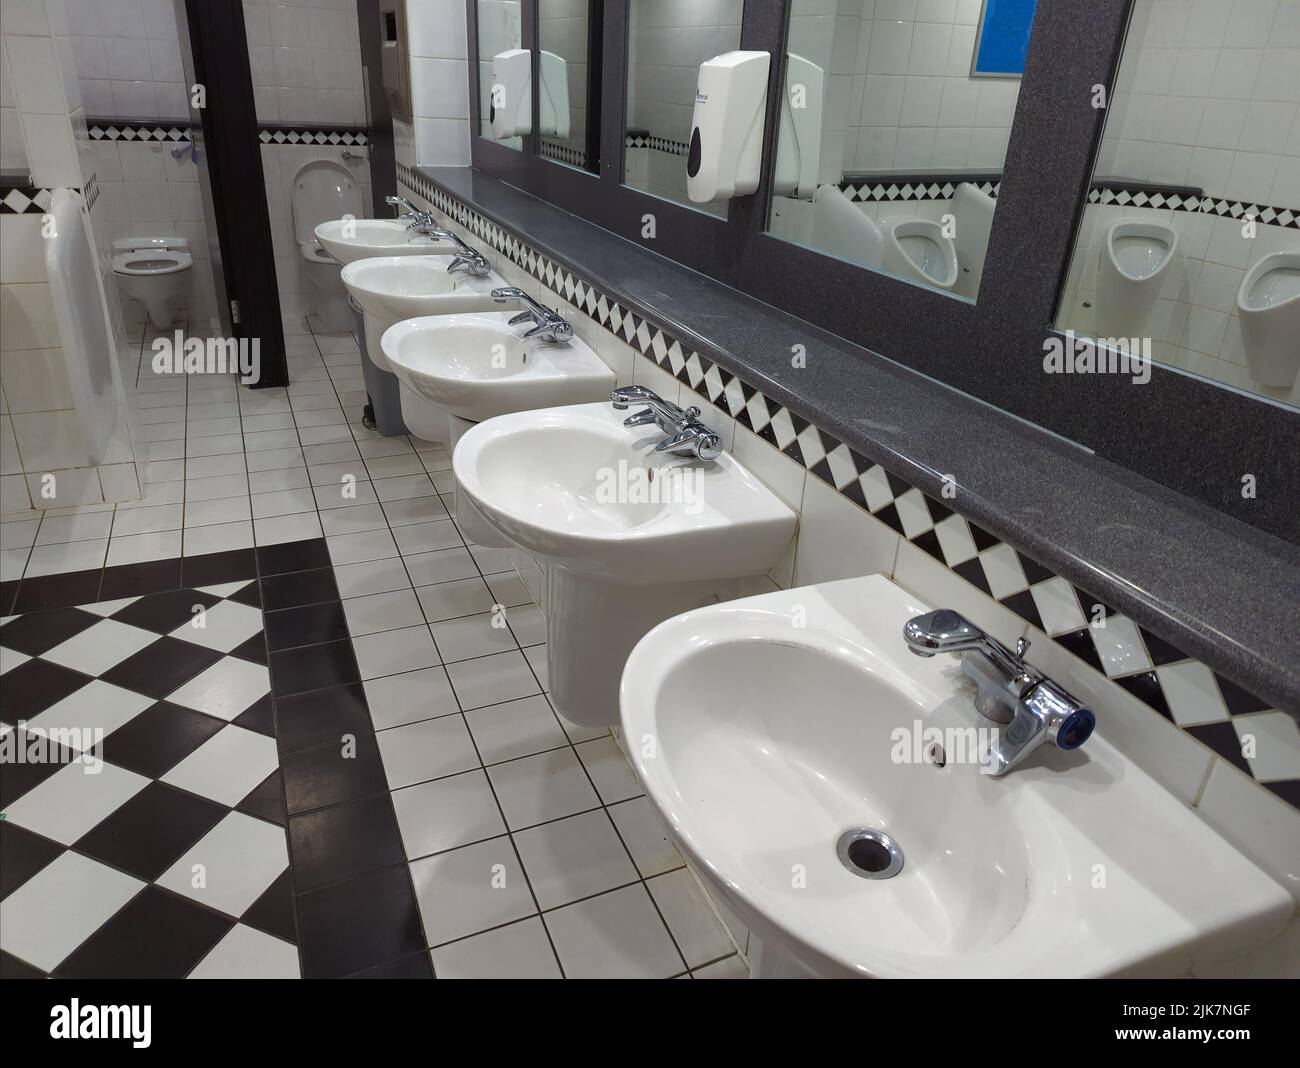 Fila de lavabos en un baño Fotografía de stock - Alamy